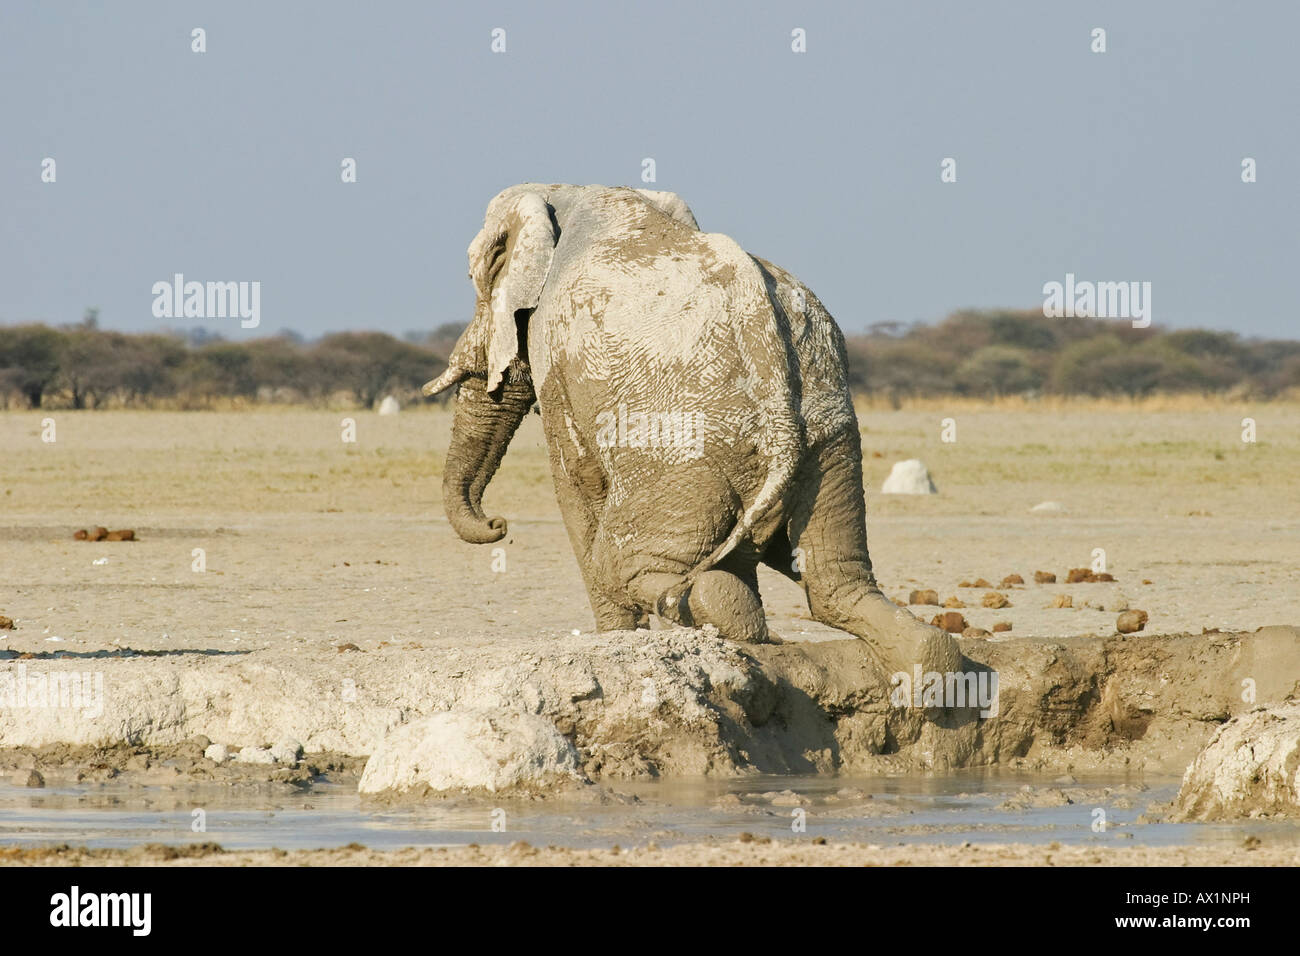 African Elephant (Loxodonta africana) after a mud bath, Nxai Pan, Makgadikgadi Pans National Park, Botswana, Africa Stock Photo